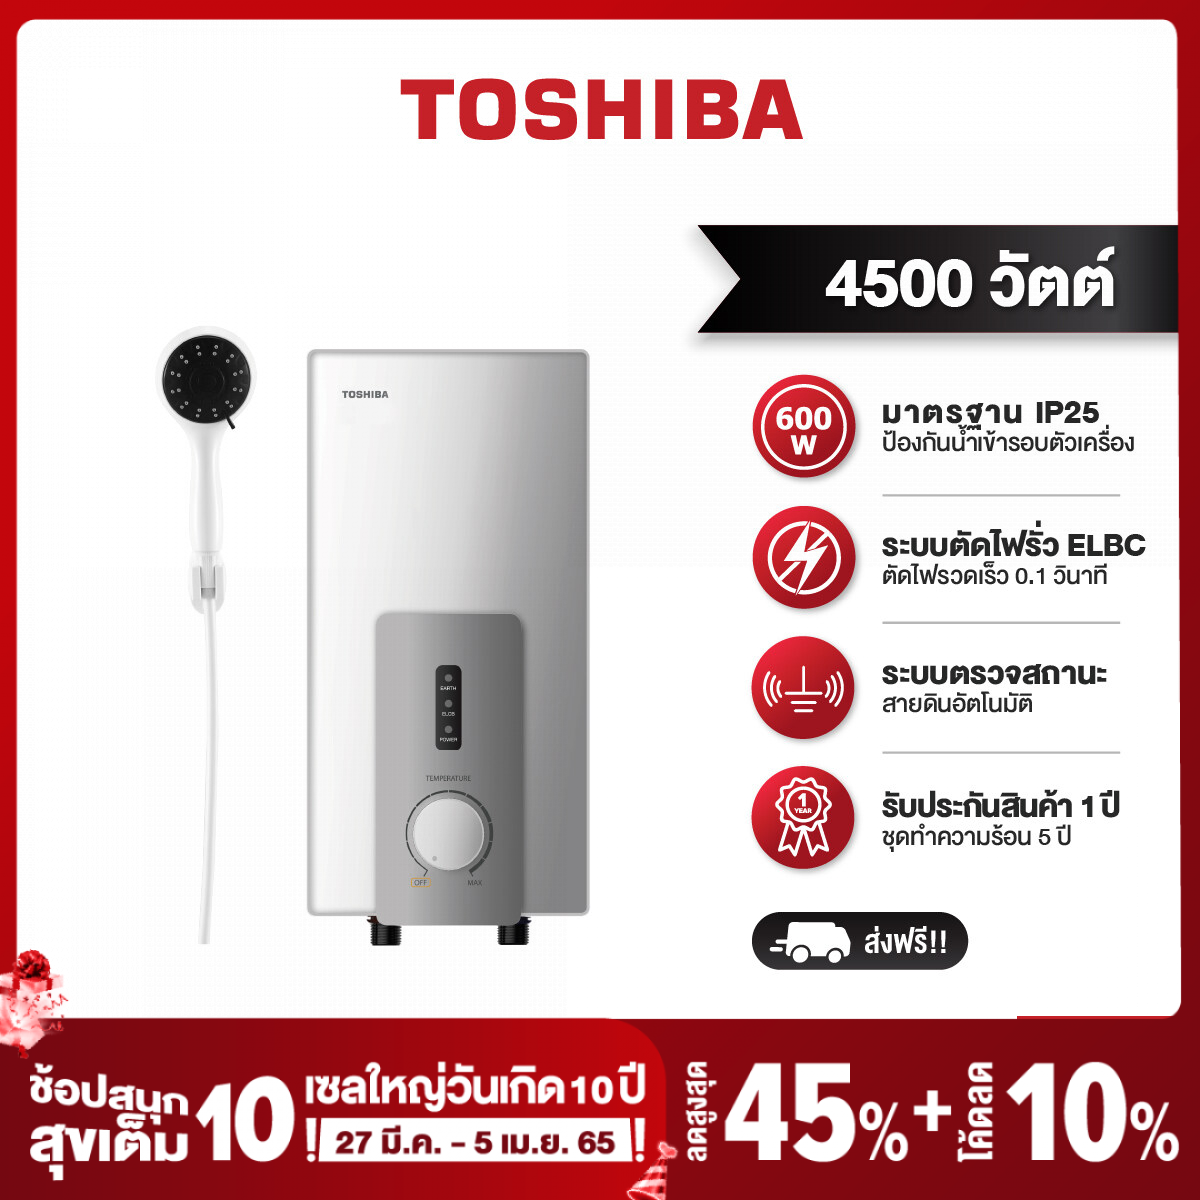 Toshiba เครื่องทำน้ำอุ่น ขนาด 4500 วัตต์ รุ่น DSK45S5KW